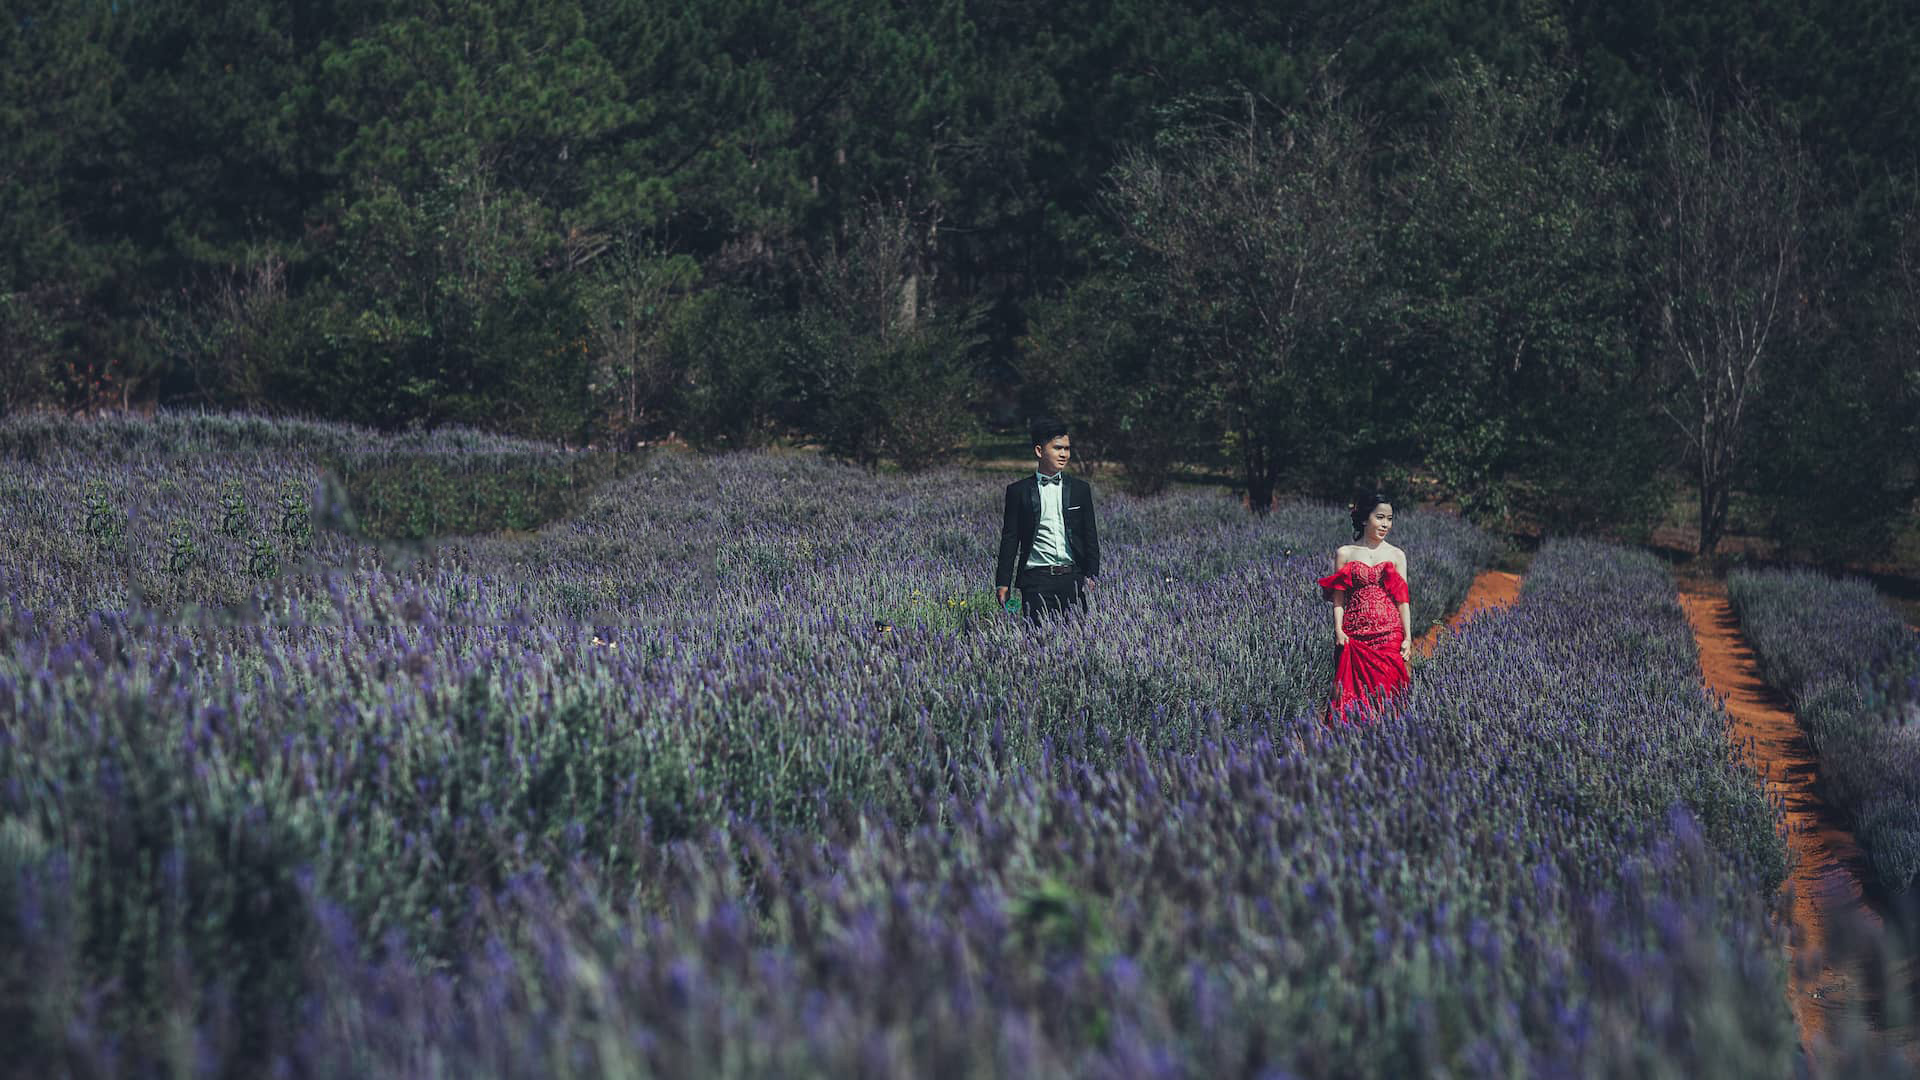 Tổng hợp hình ảnh hoa lavender khô đẹp nhất – Loài hoa may mắn, hạnh phúc - [Kích thước hình ảnh: 1920x1080 px]